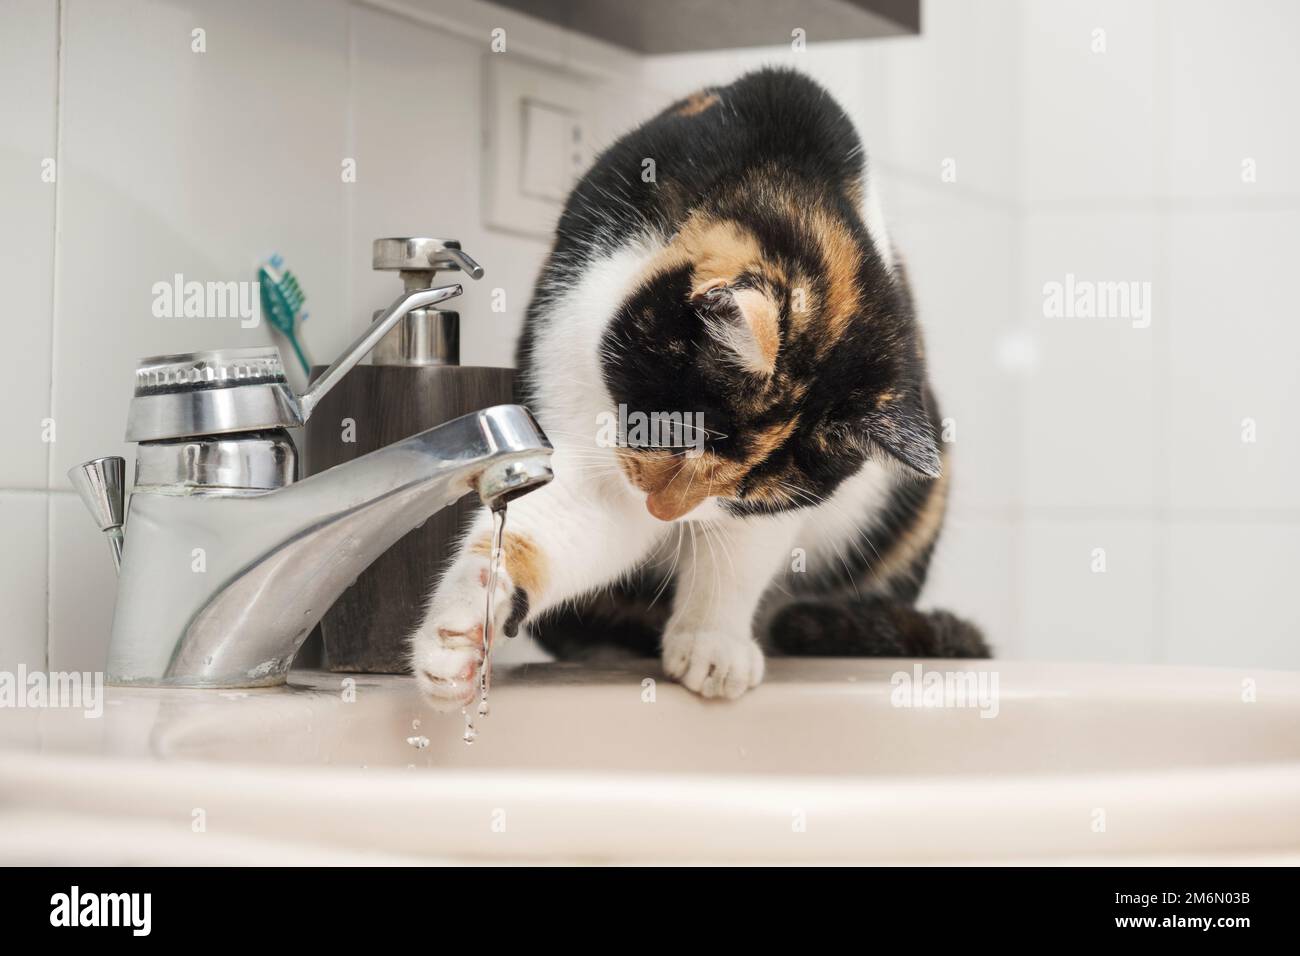 Domestic cat washing himself sitting on the washbasin Stock Photo